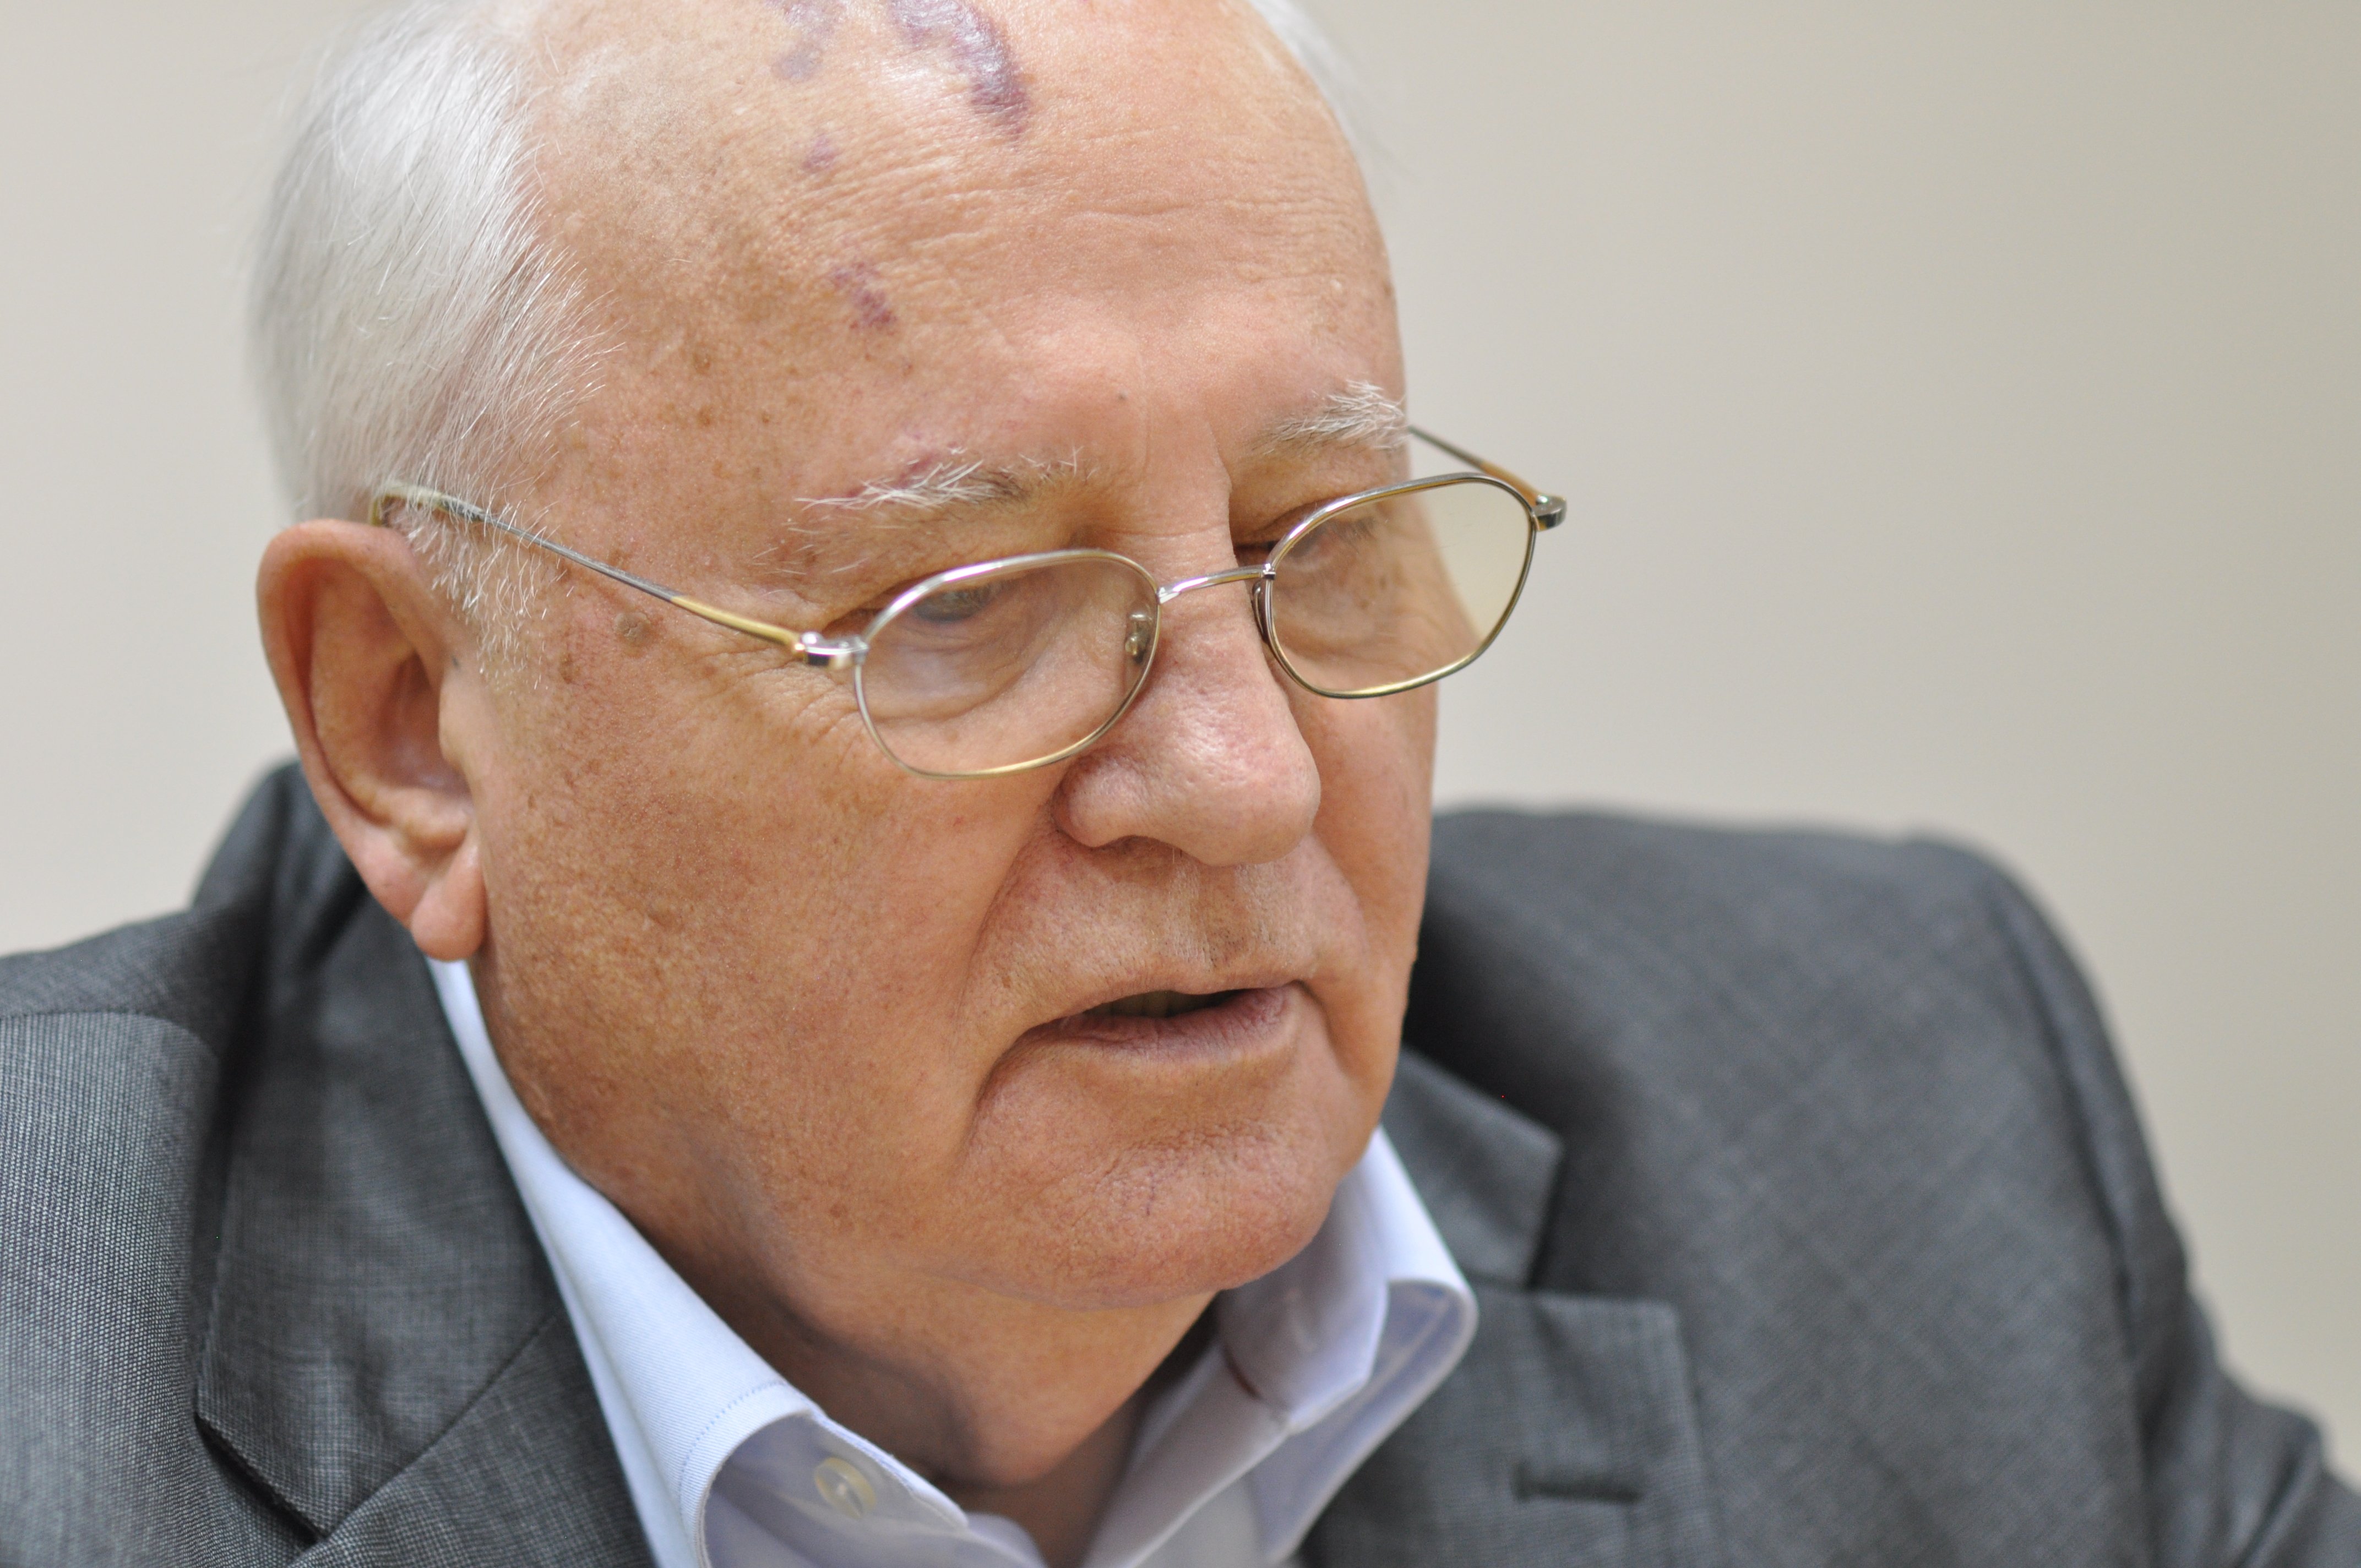 Пресс-служба Михаила Горбачева опровергла сообщения о его плохом состоянии его здоровья